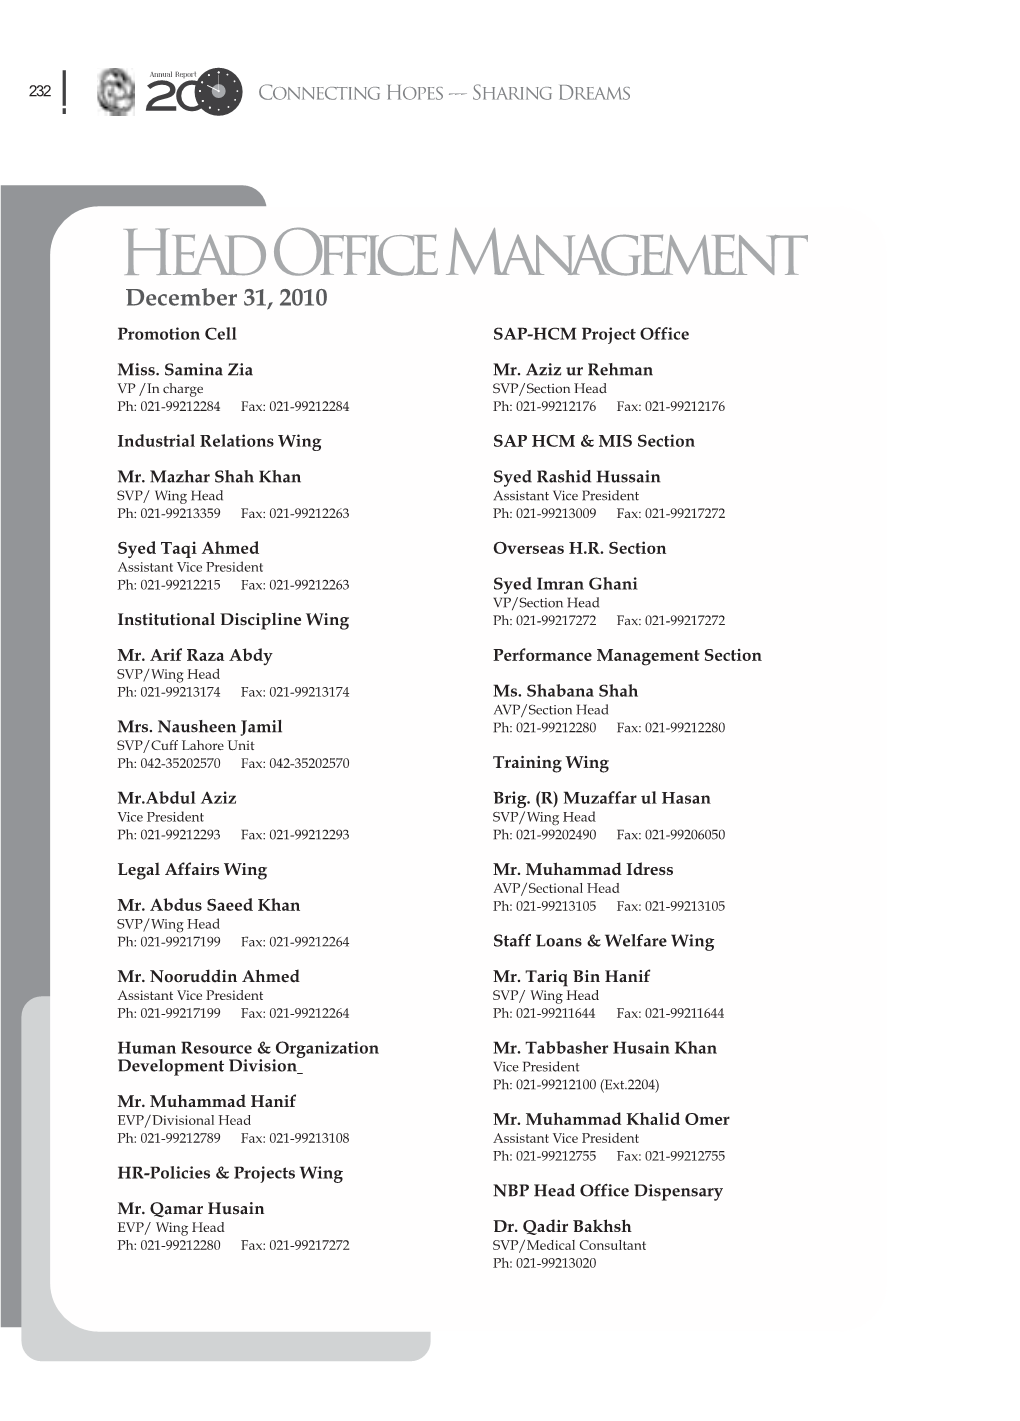 Head Office Management December 31, 2010